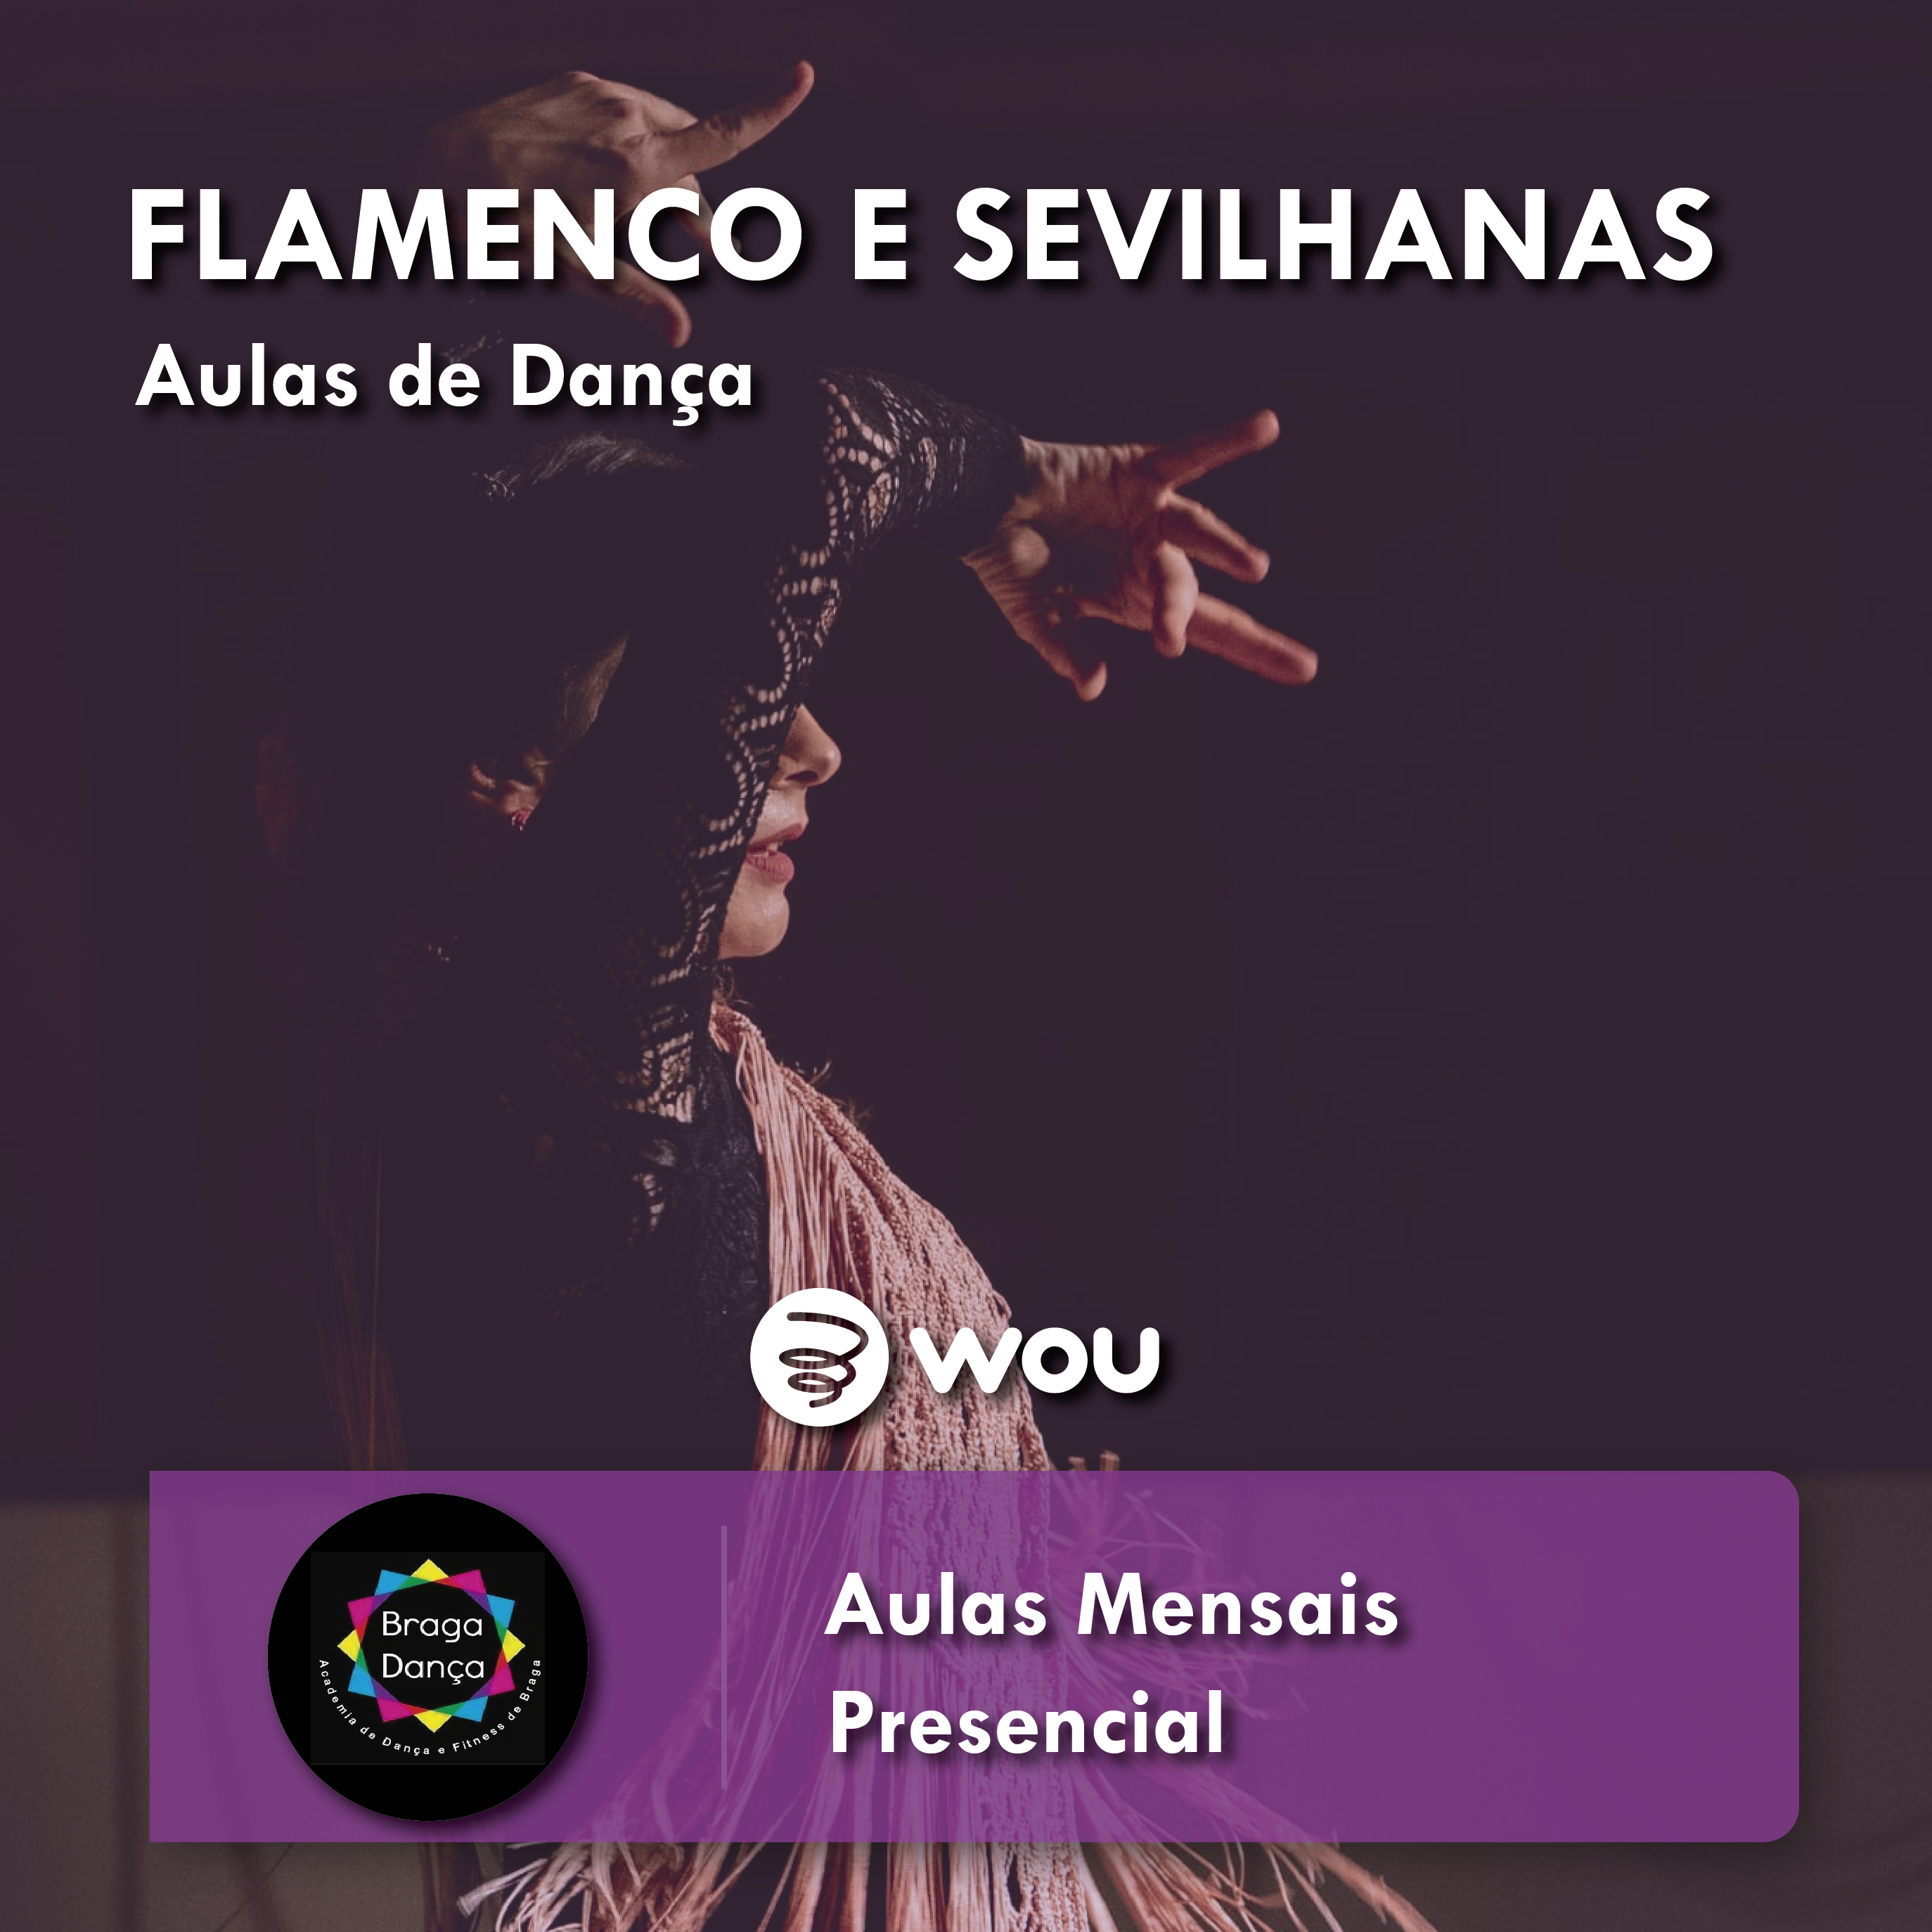 Aulas de Flamenco e Sevilhanas em Braga